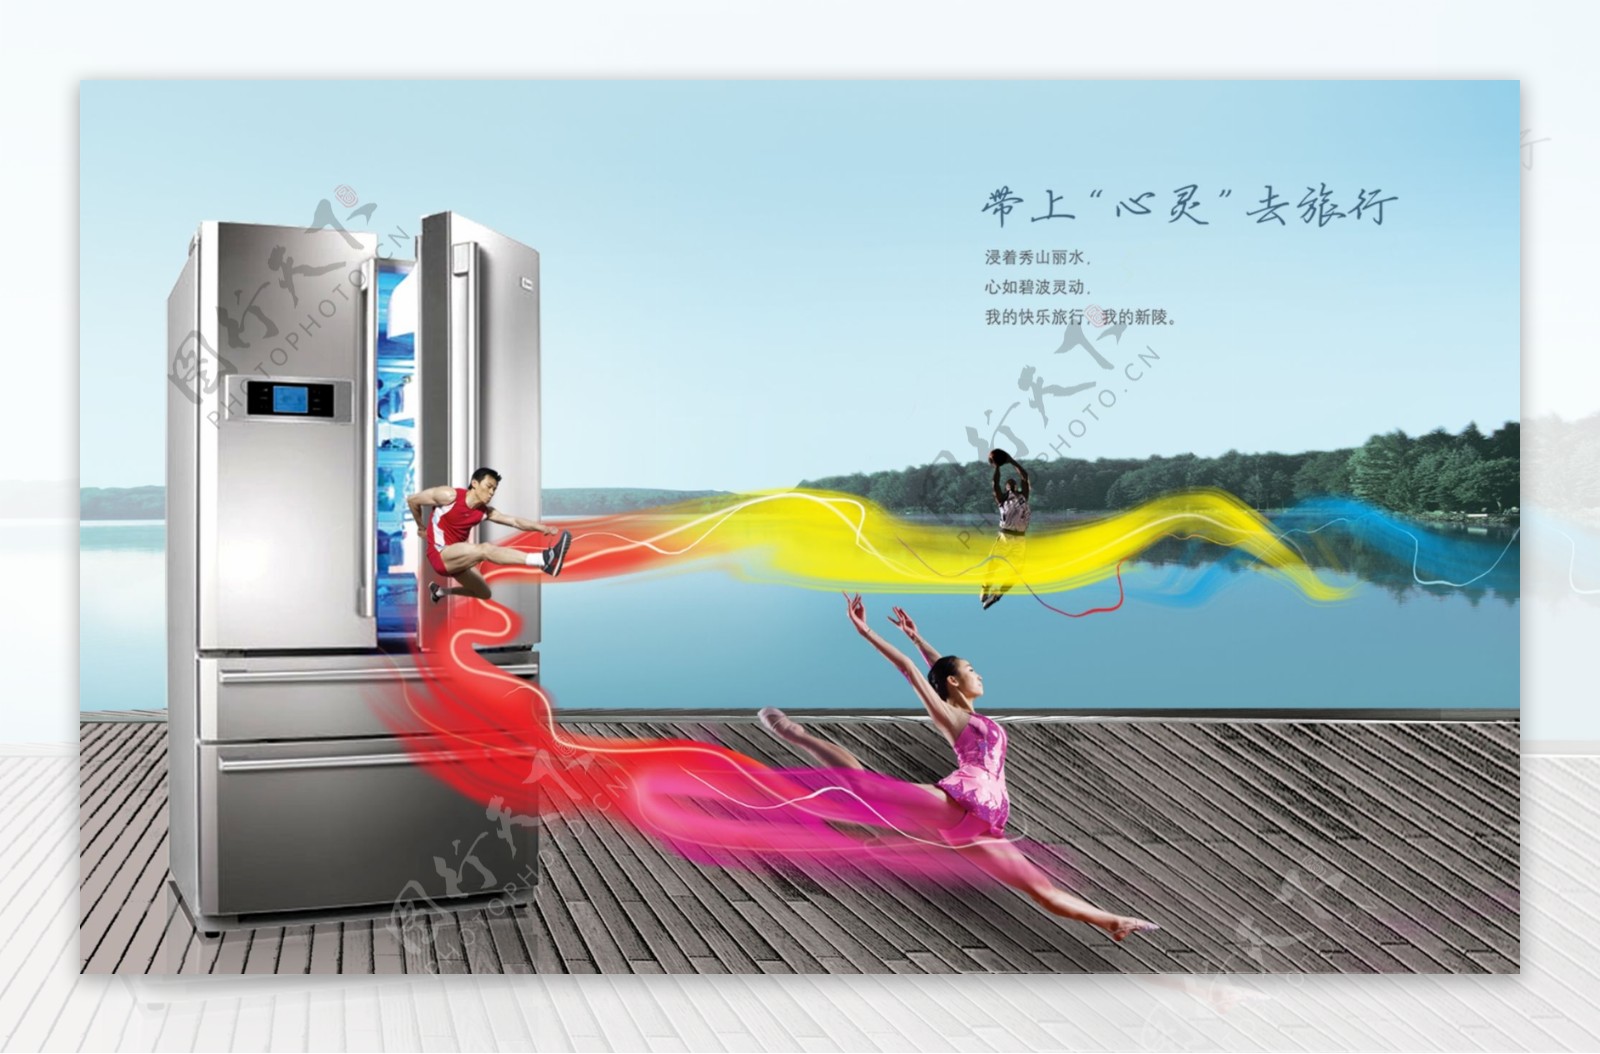 龙腾广告平面广告PSD分层素材源文件家用电器类地板运动员青山绿水冰箱